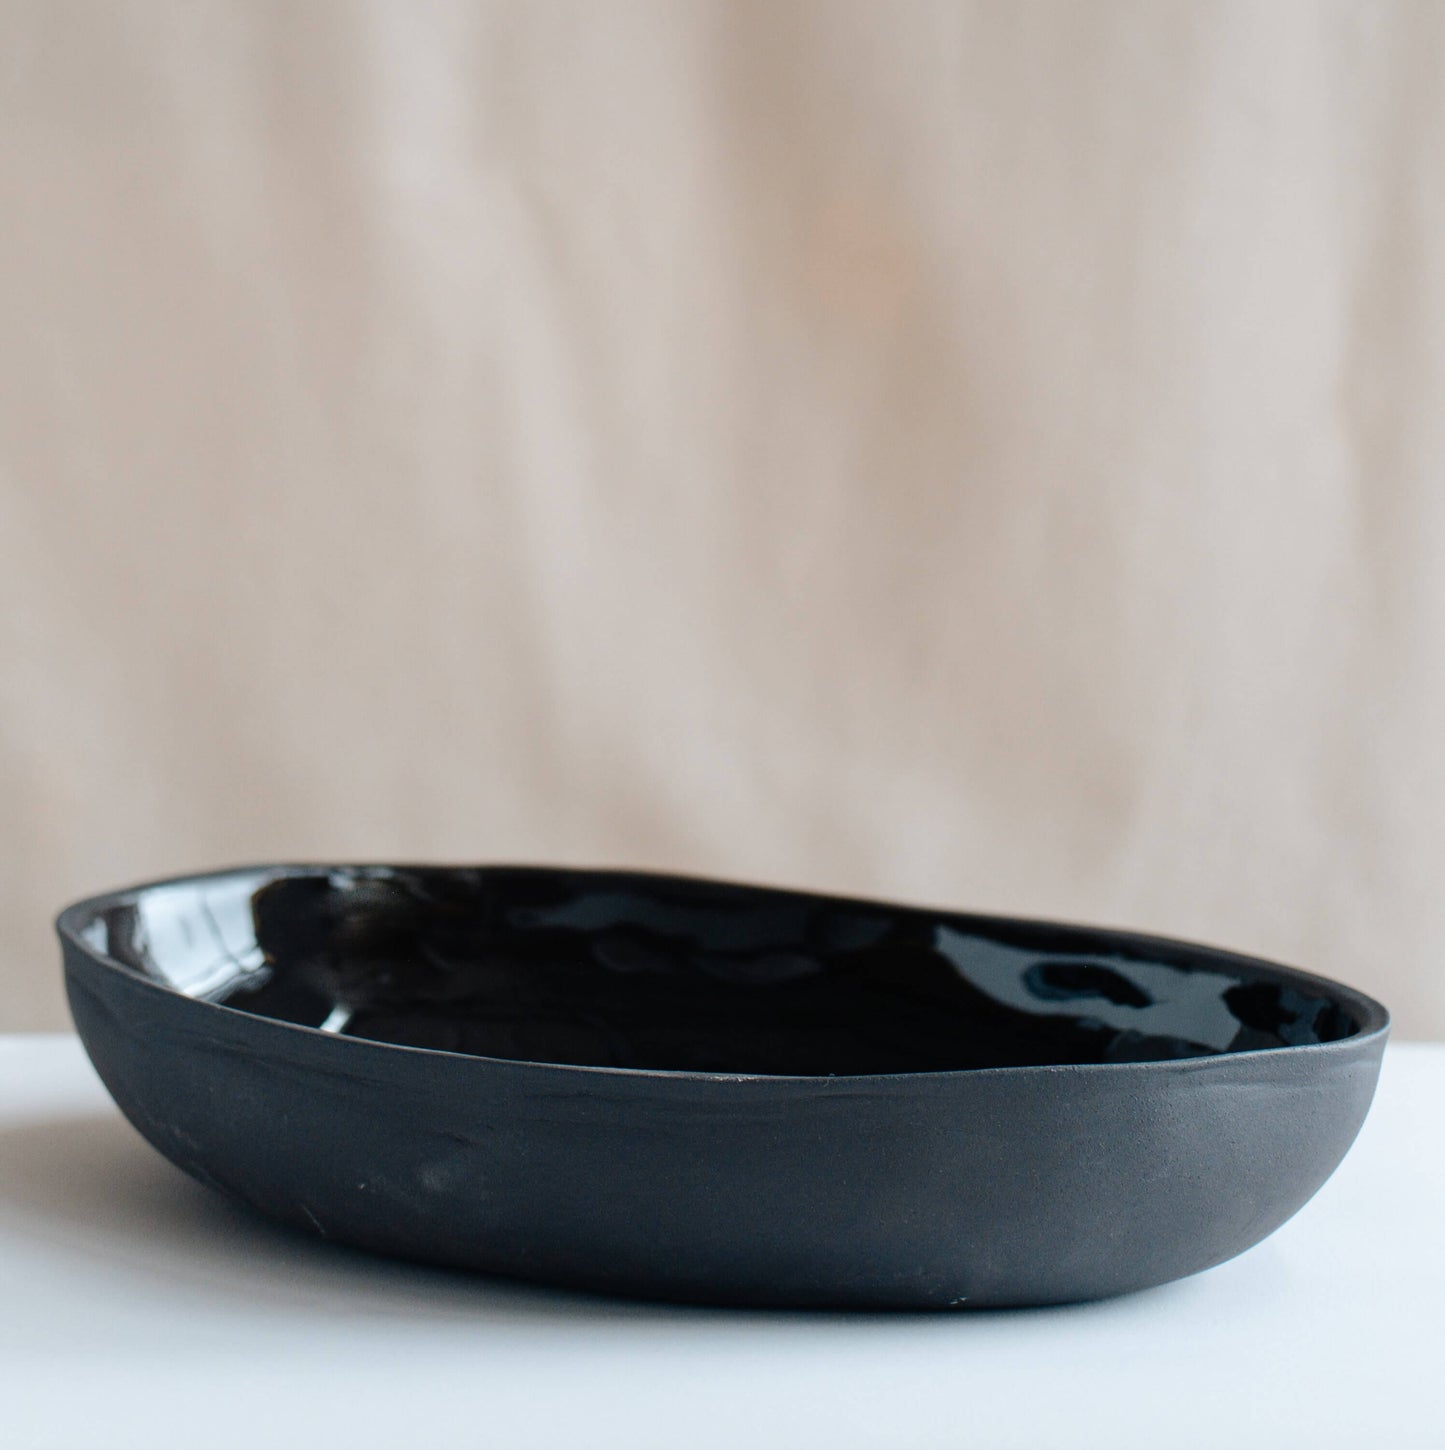 KAKI ovale schaal van zwart keramiek